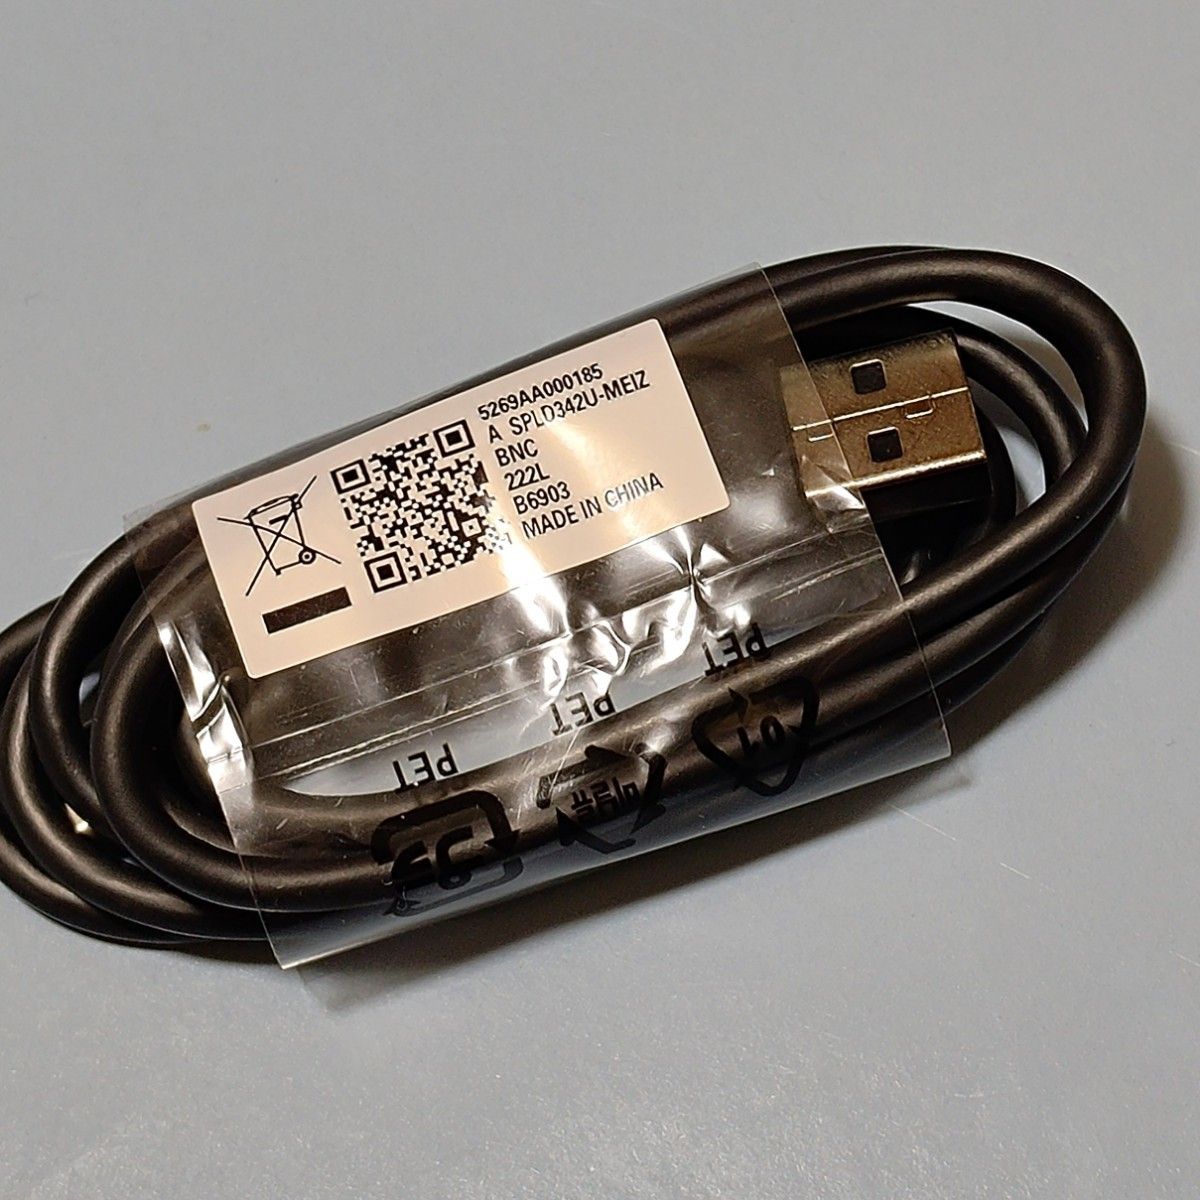 ④2個 Motorola純正 USBケーブル USB-A⇒タイプC 高速充電 急速充電